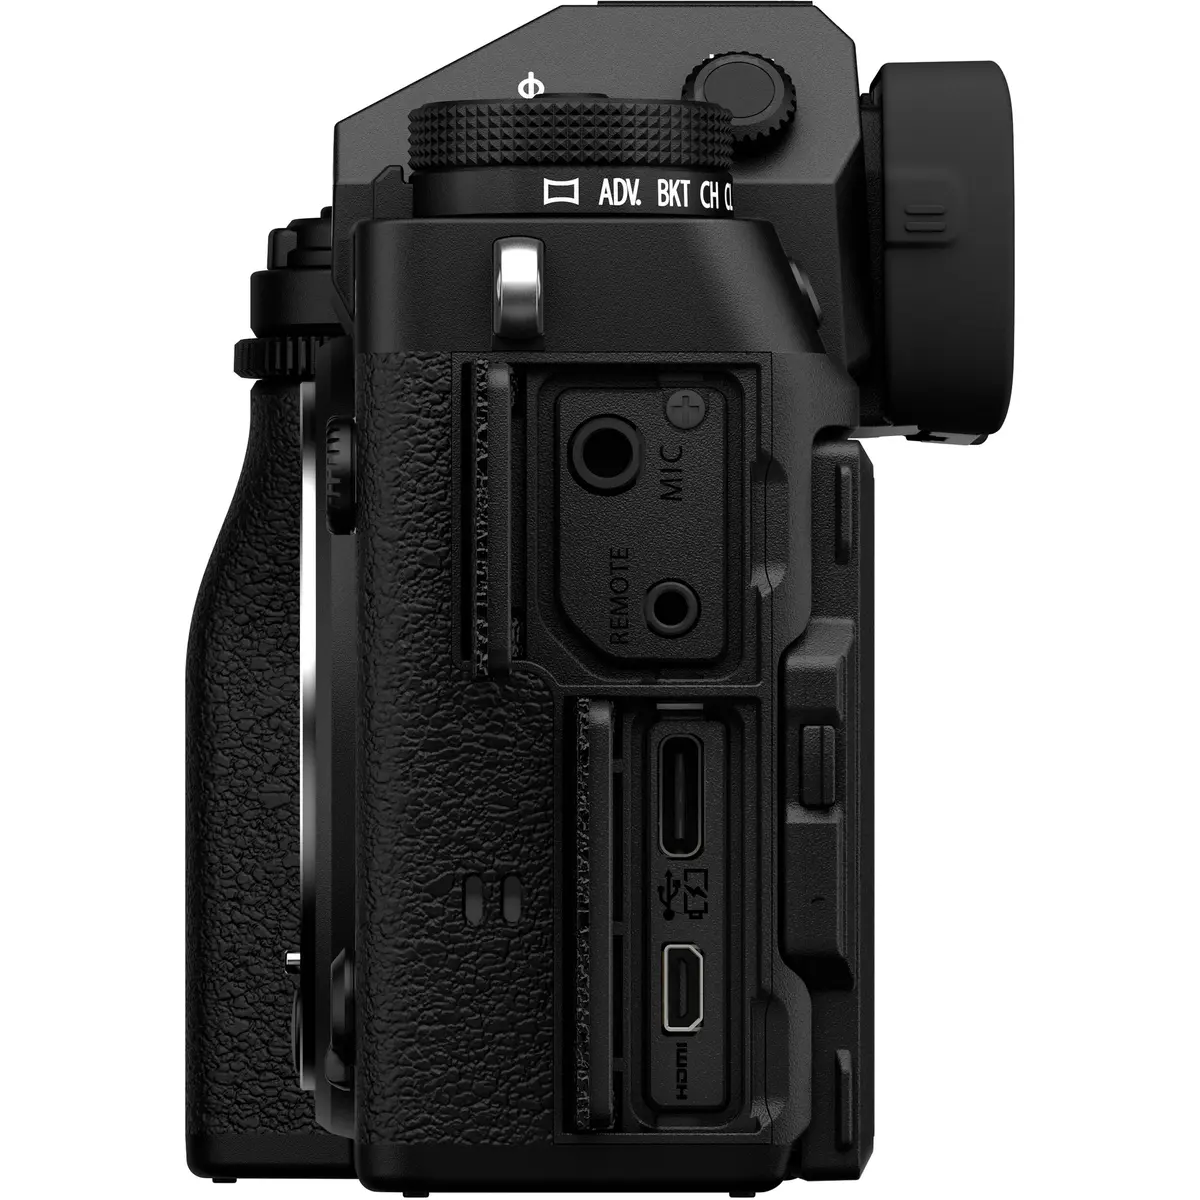 3. Fujifilm X-T5 Body Black